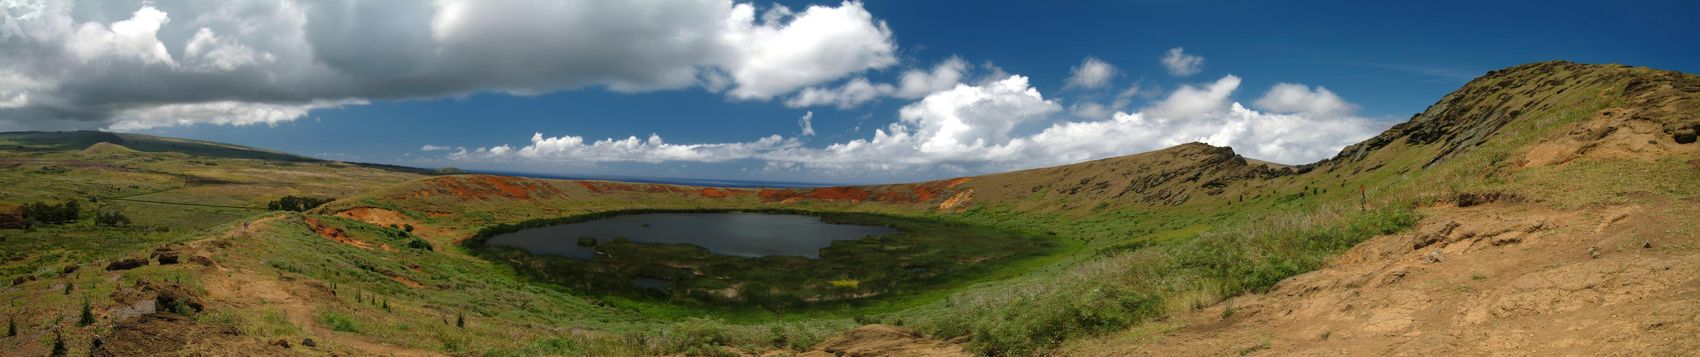 Panorama kráterového jezera